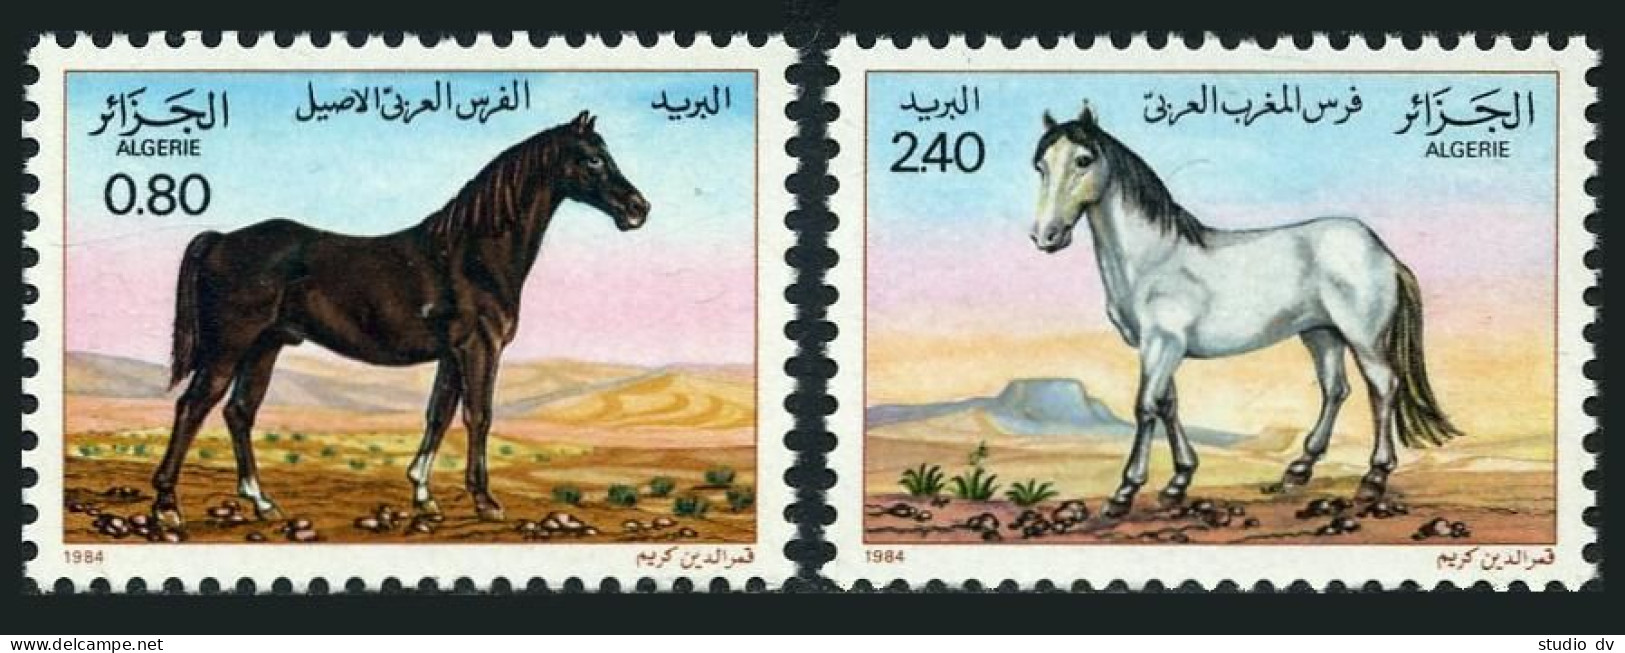 Algeria 743-744,MNH.Michel 854-855. Horses 1984.Brown Stallion,White Mare. - Algerien (1962-...)